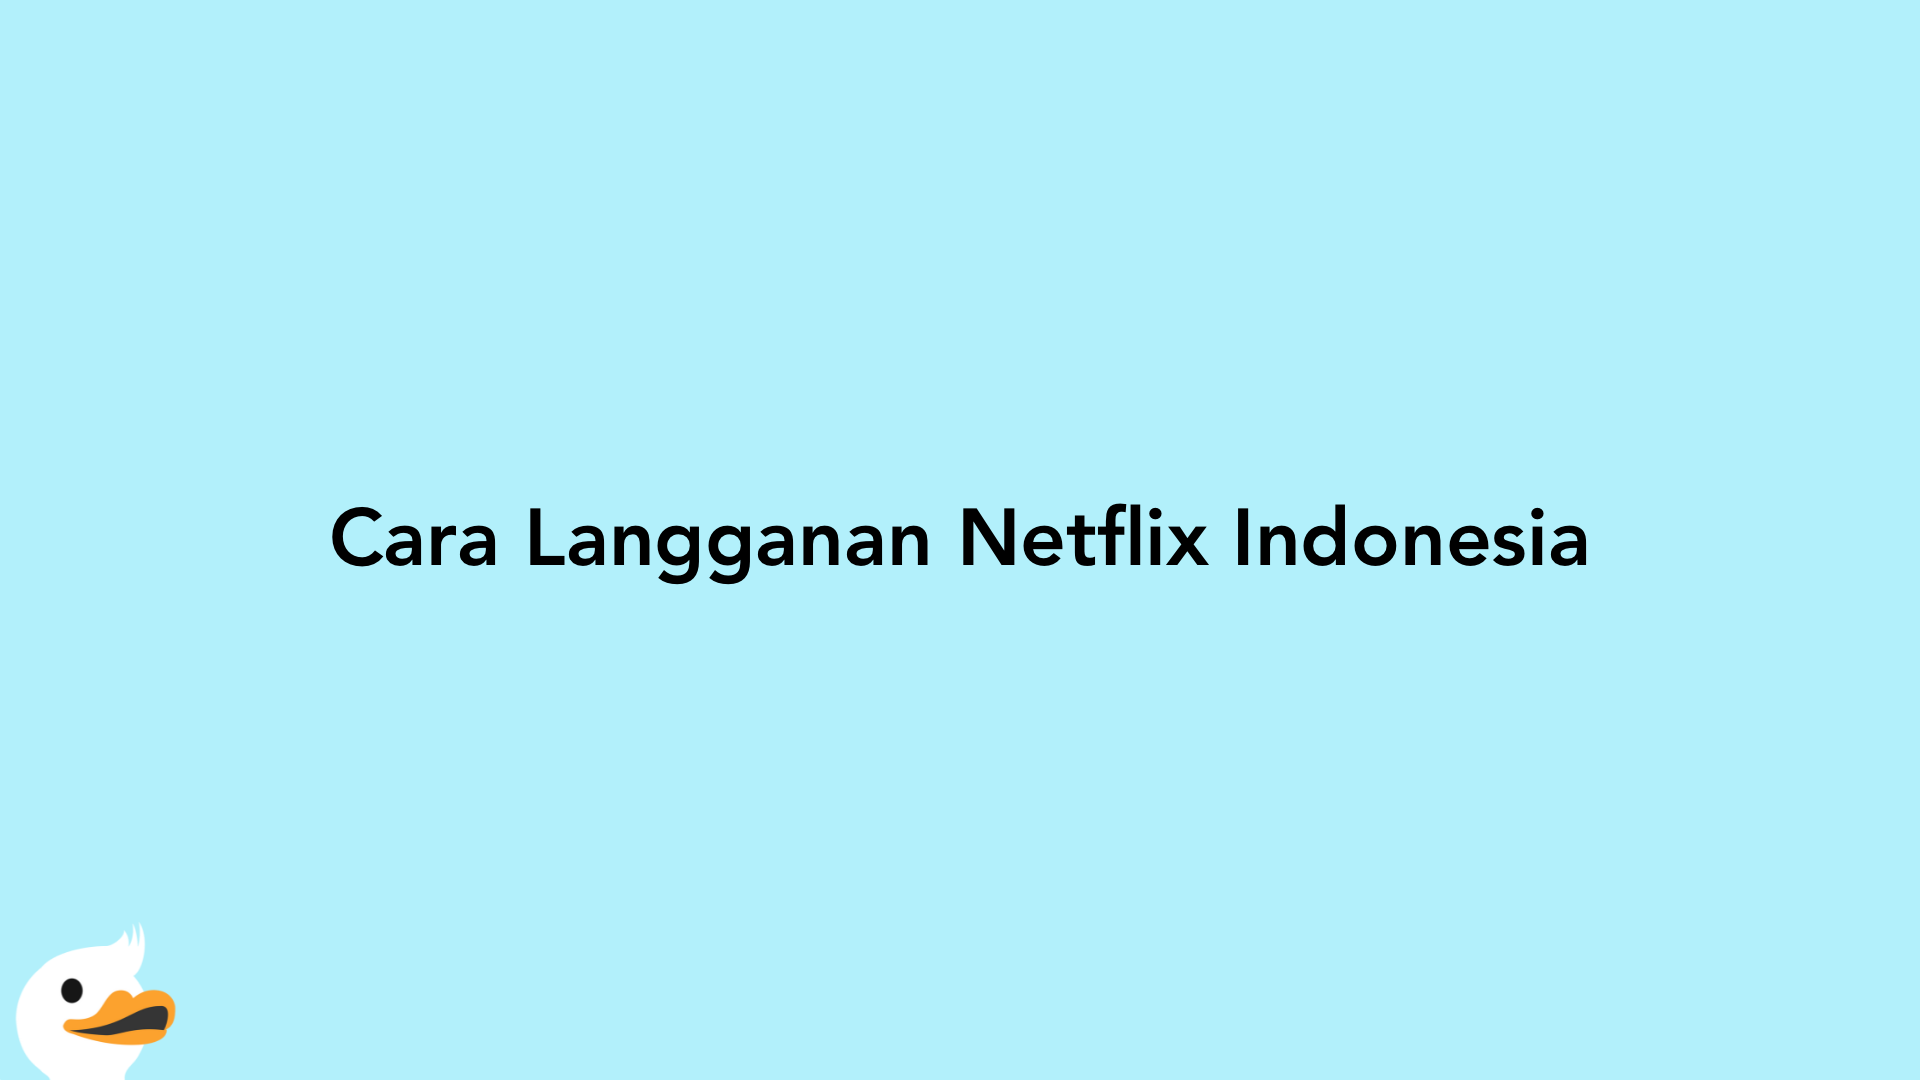 Cara Langganan Netflix Indonesia